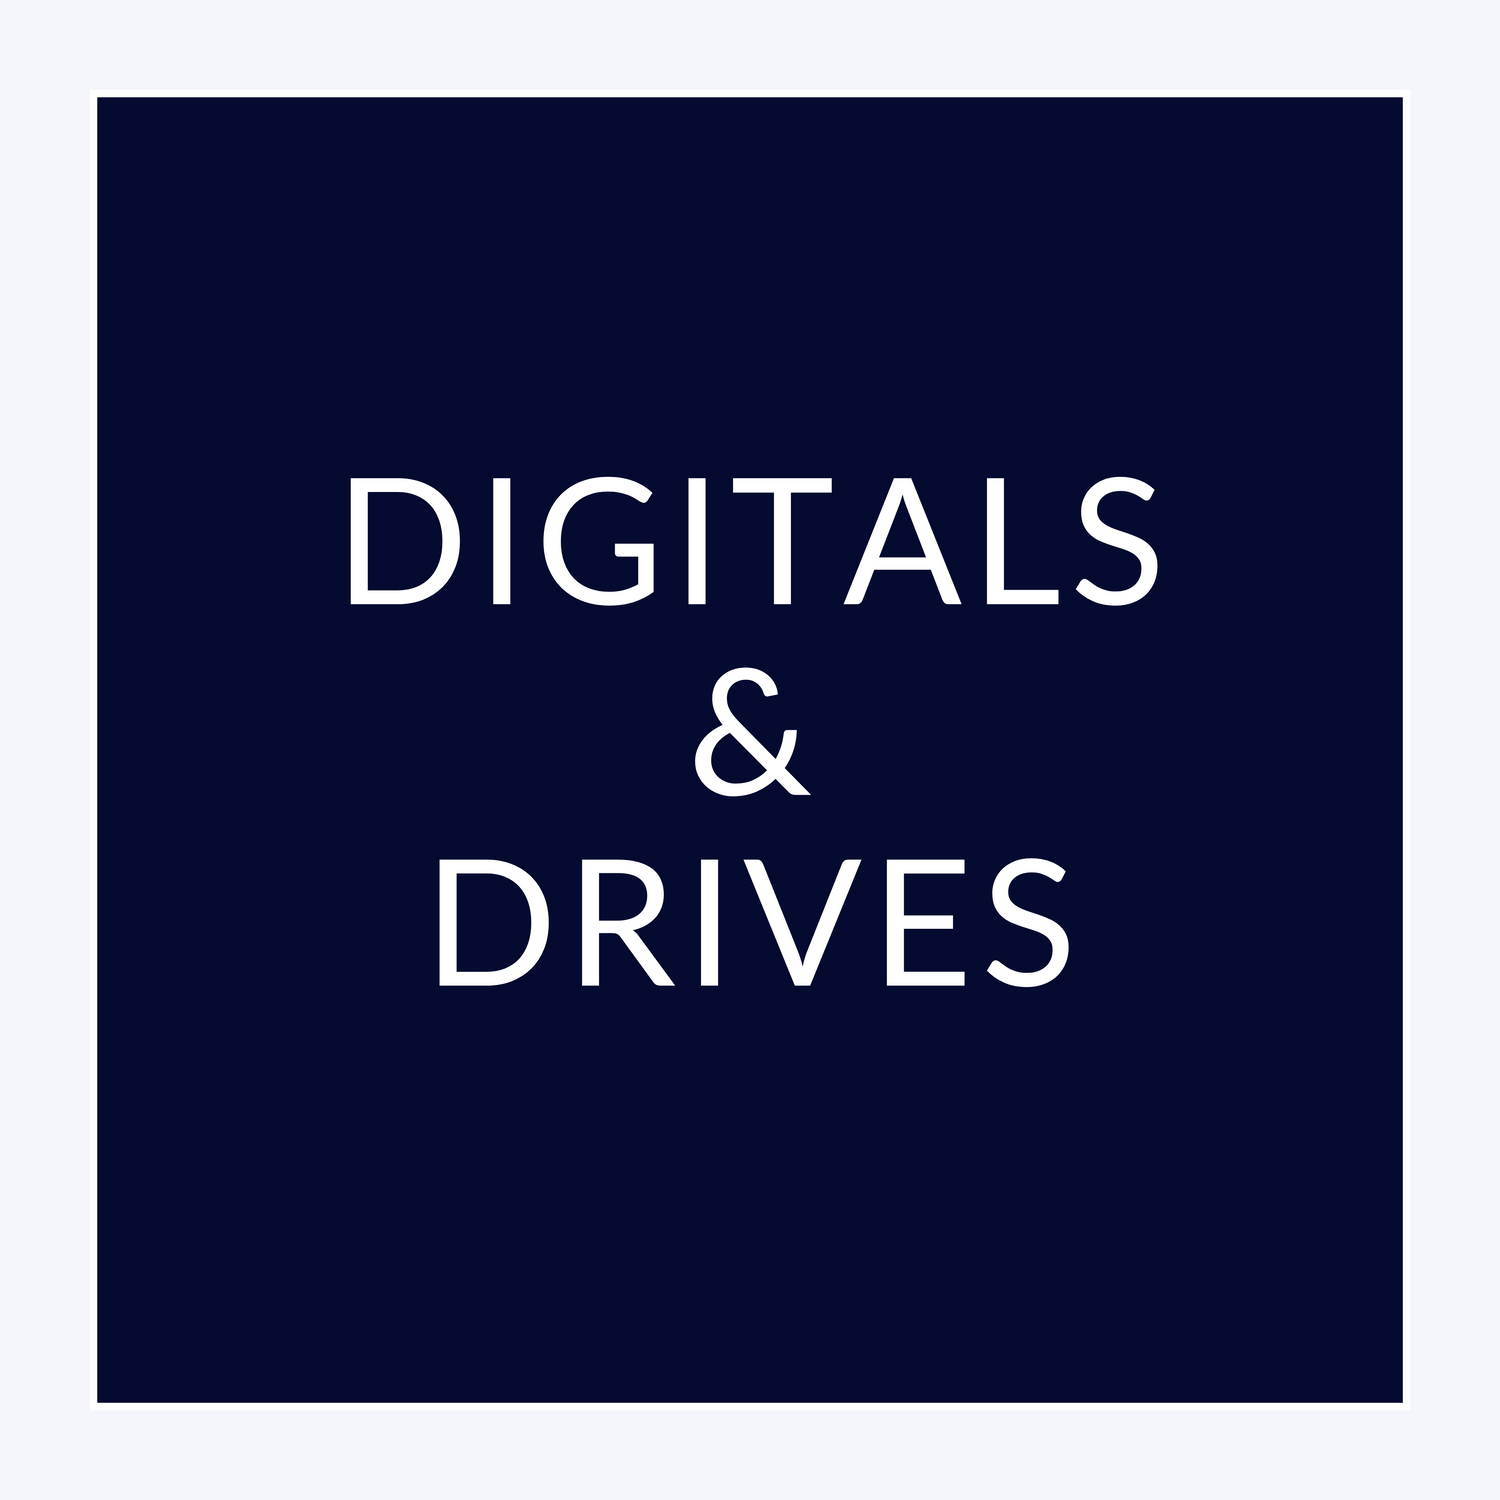 Digitals & Drives